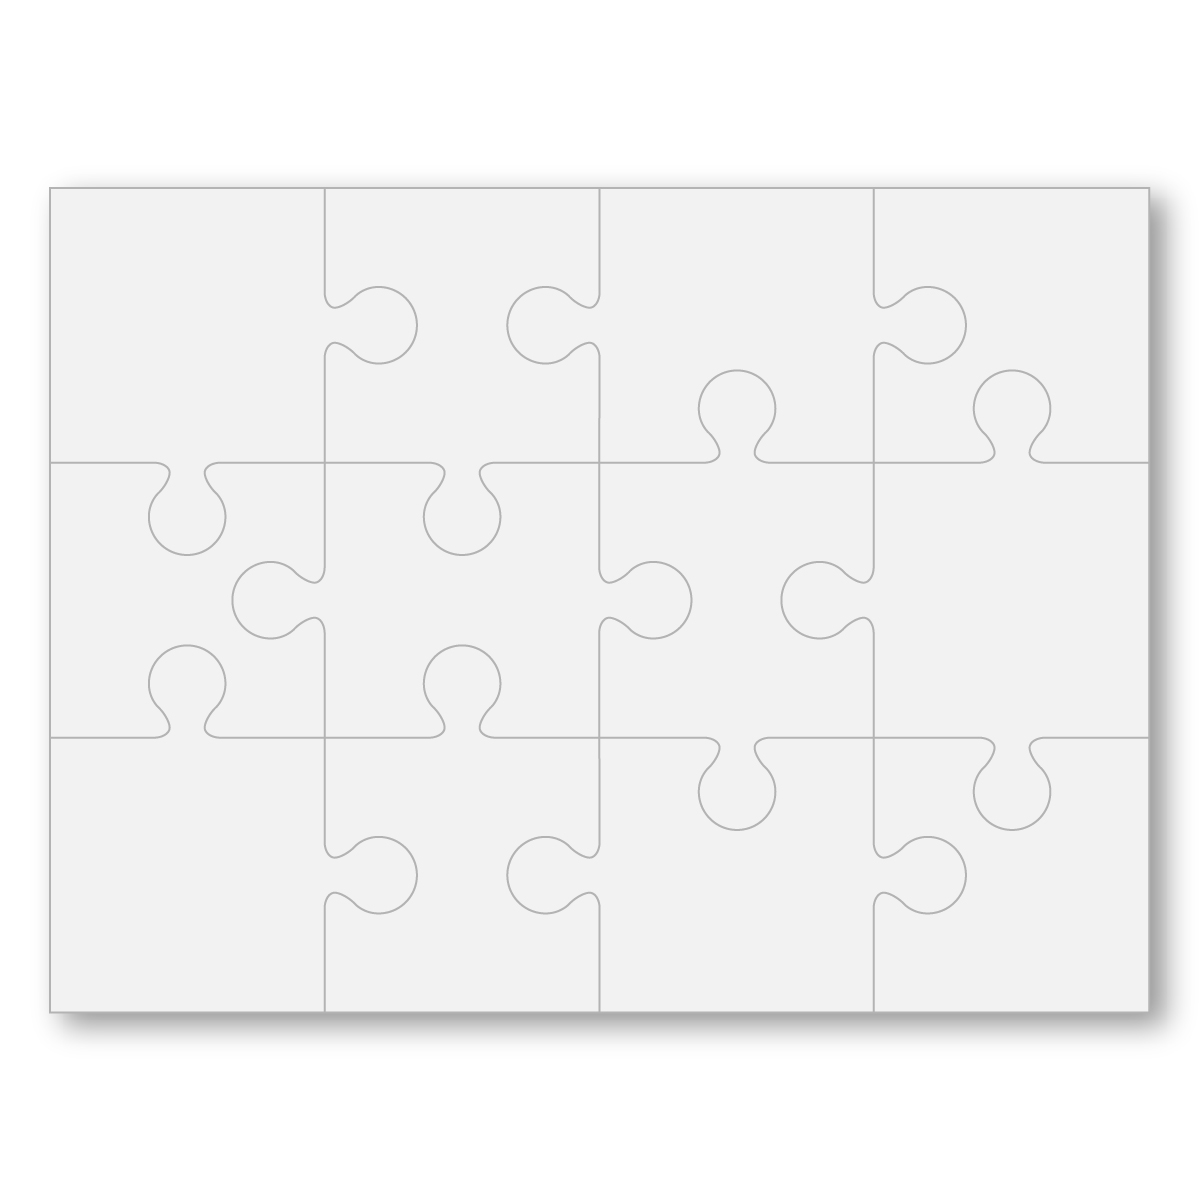 Full Color Board Puzzle 8 x 8